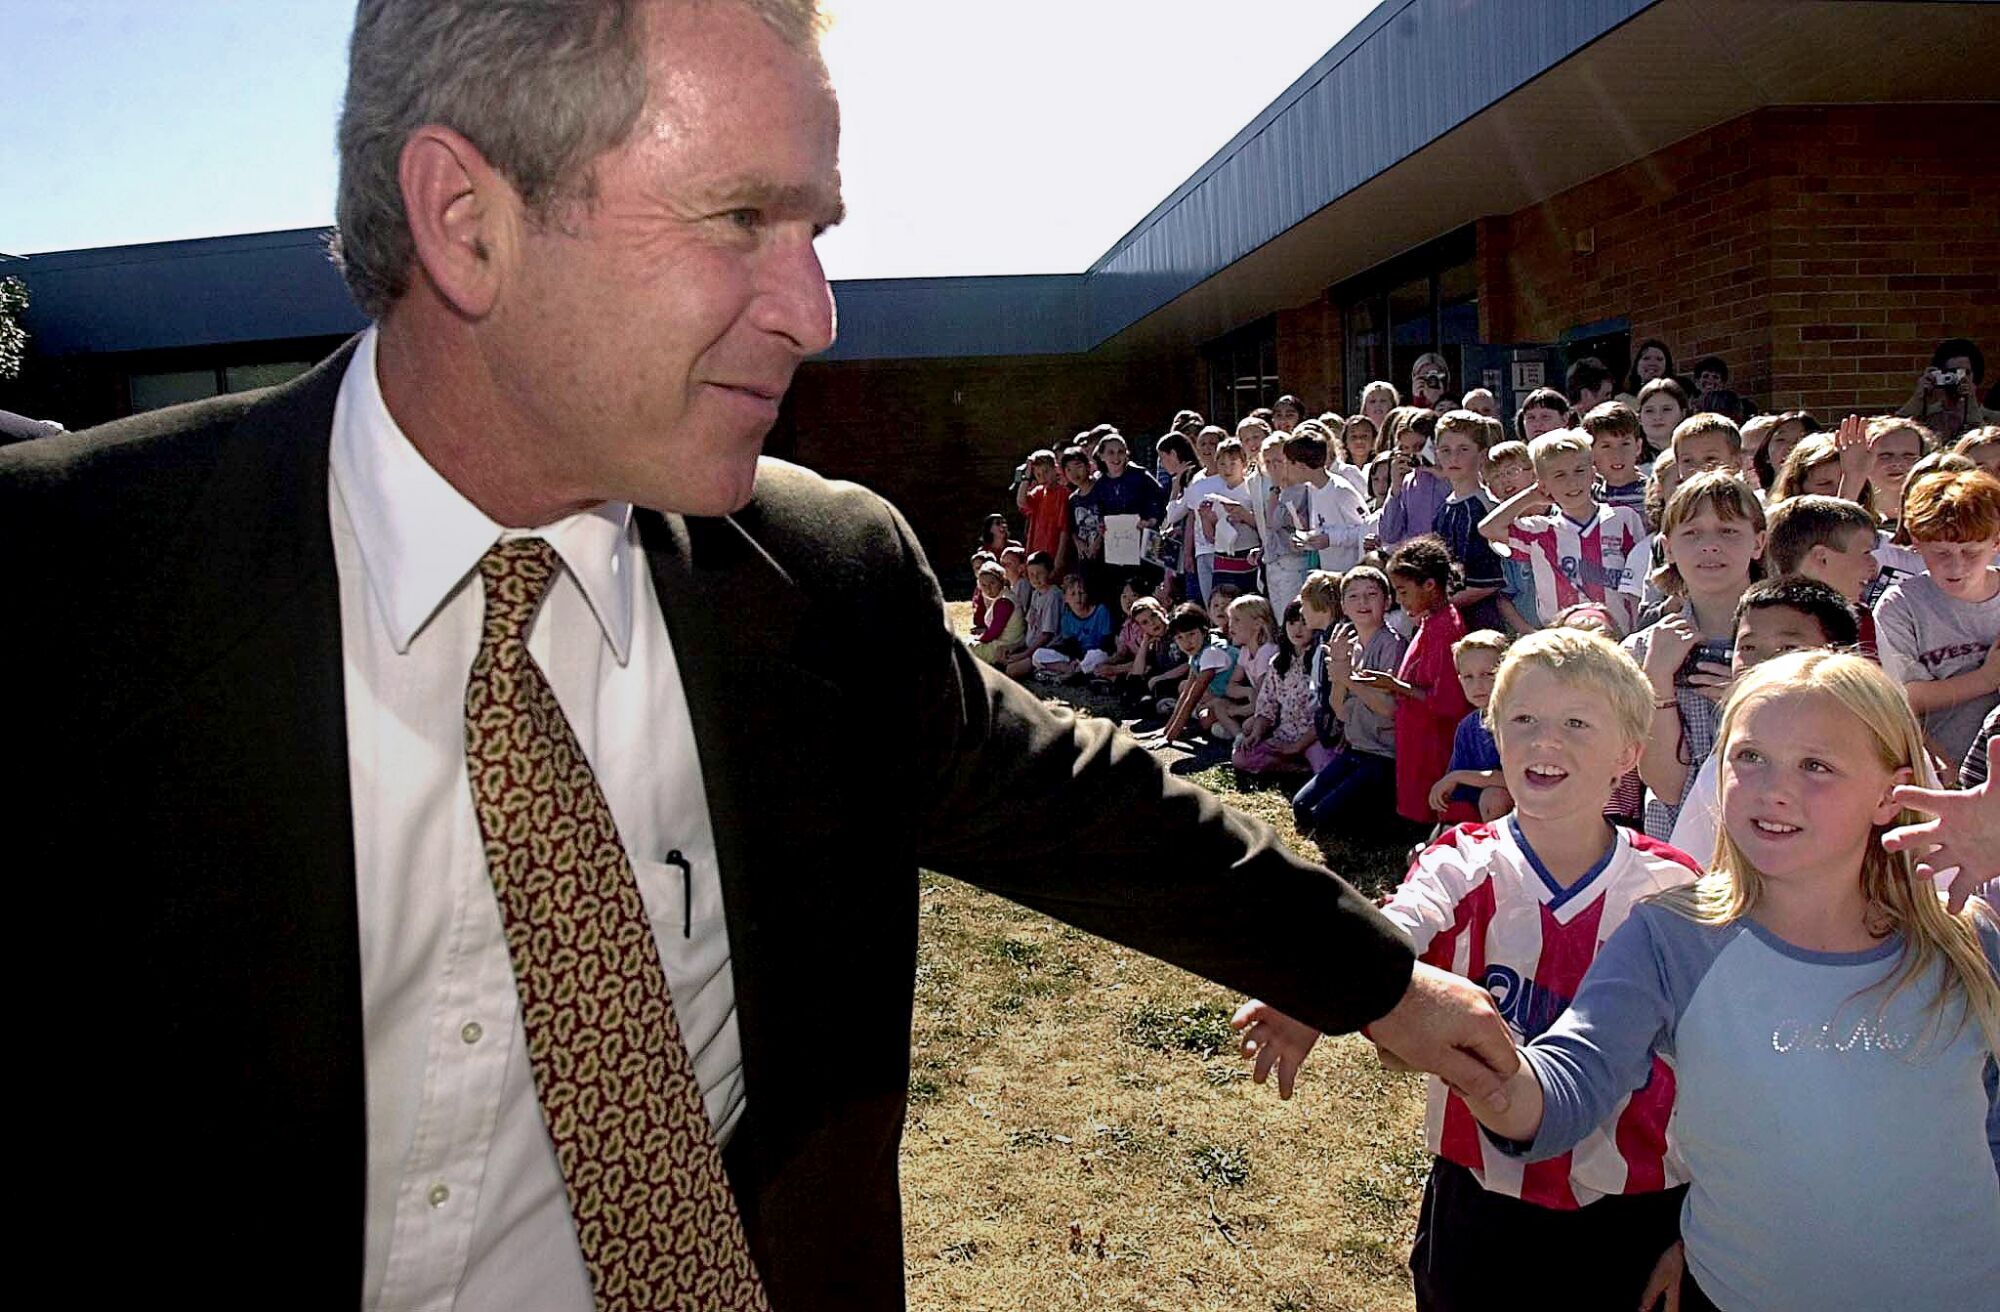 George W. Bush s'éloigne d'une foule d'enfants à l'extérieur alors que certains tendent la main pour toucher sa main.